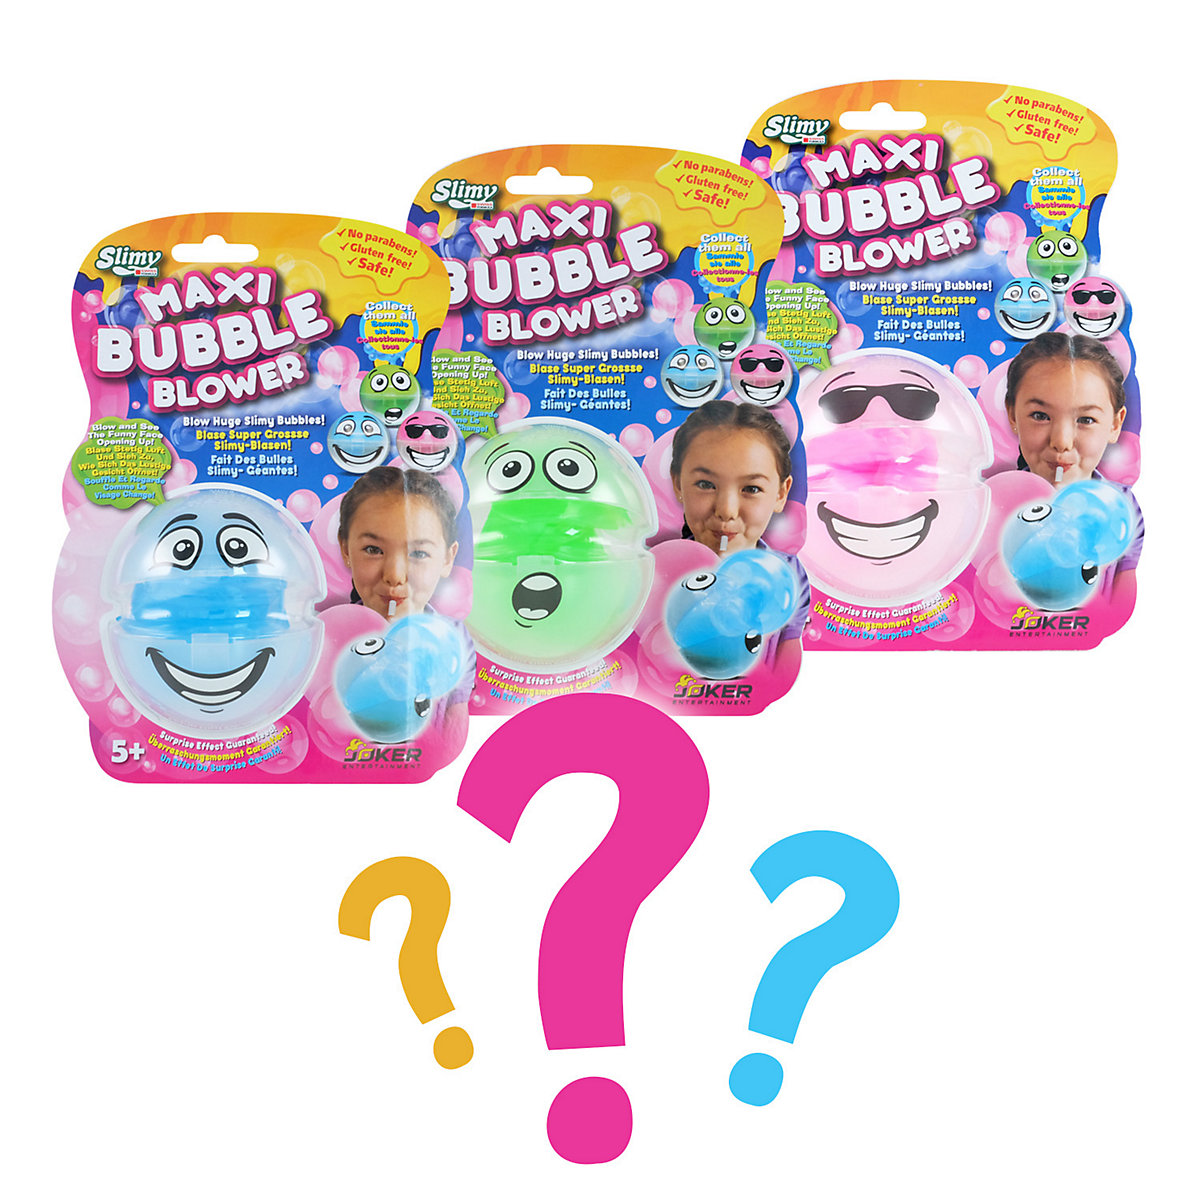 SLIMY® Maxi Bubble mit Bubble-Blower für super große Slime-Blasen aus extrem dehnbarem Schleim Spielmasse für Kinder